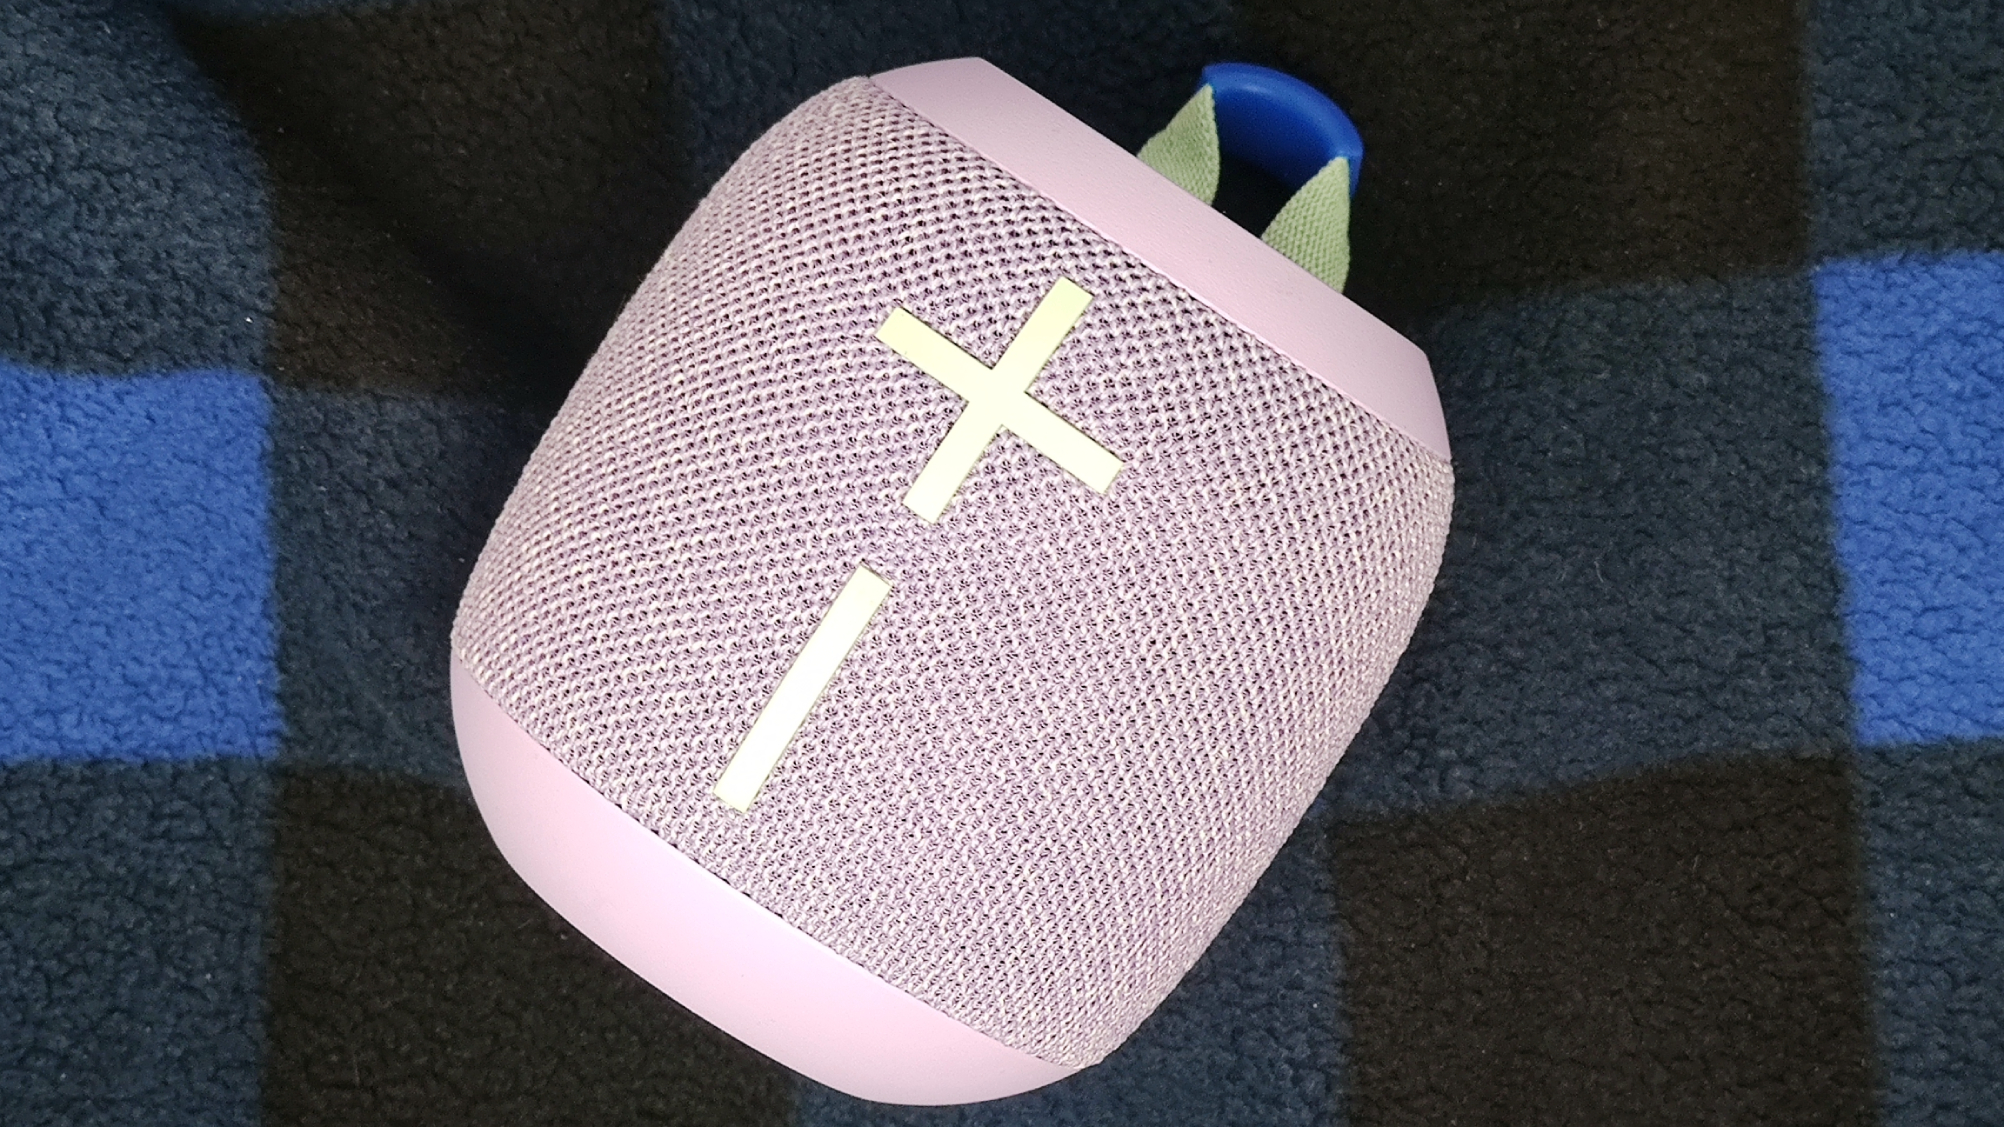 Ultimate Ears Wonderboom 3: Shop New Outdoor Bluetooth Speaker Online